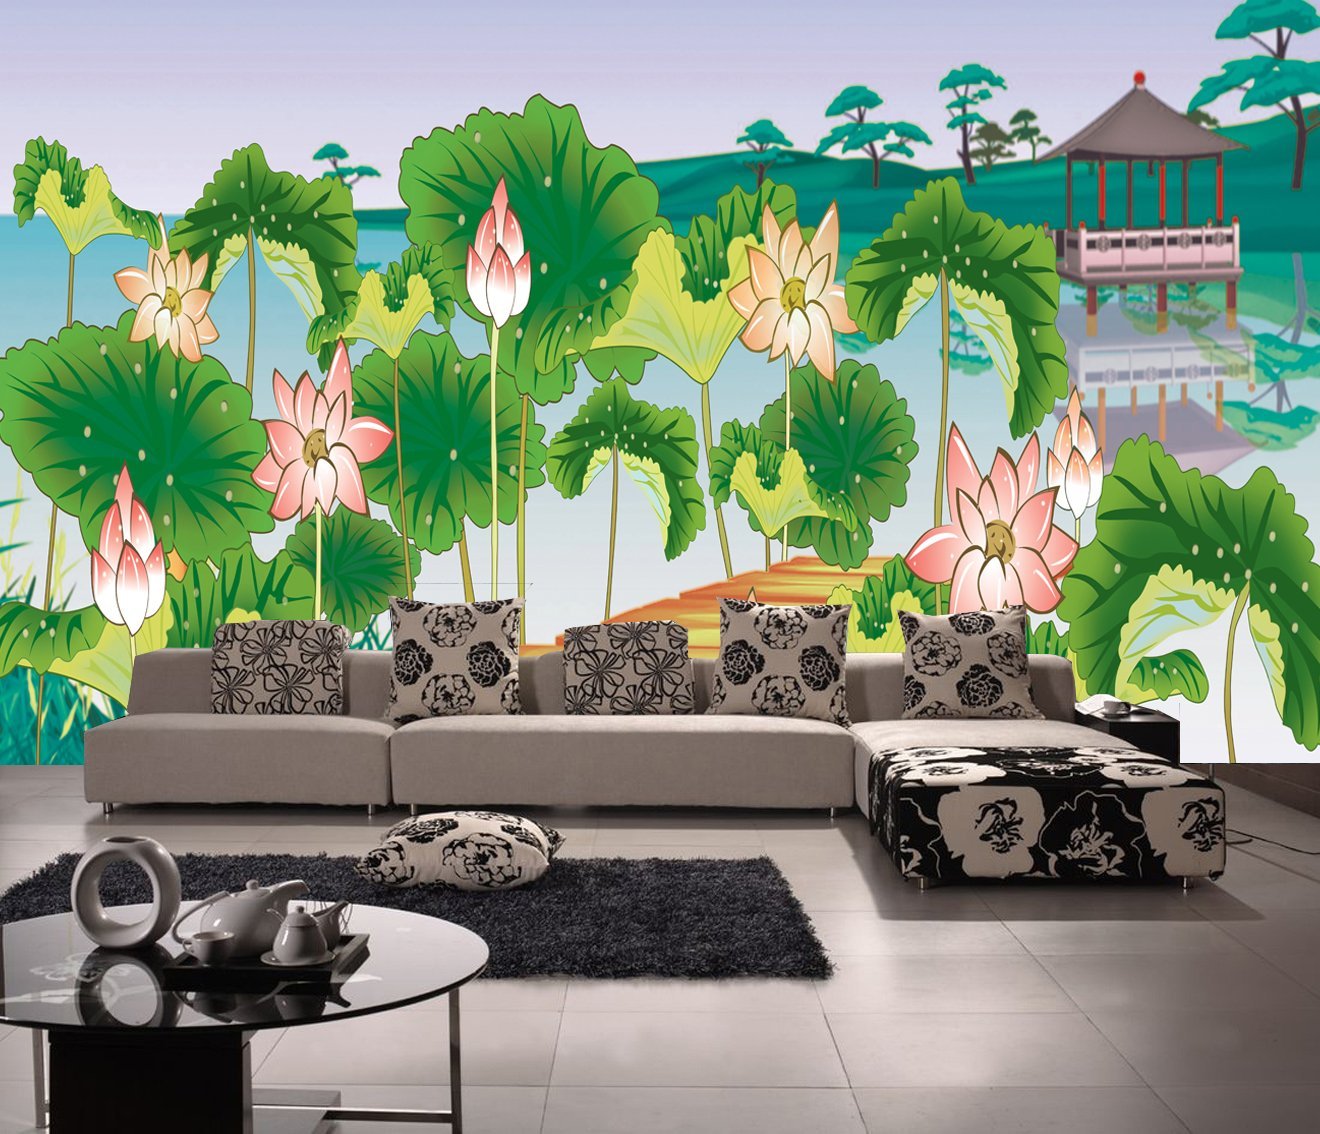 潍坊市客厅沙发|客厅沙发供应商| 背景墙壁画订